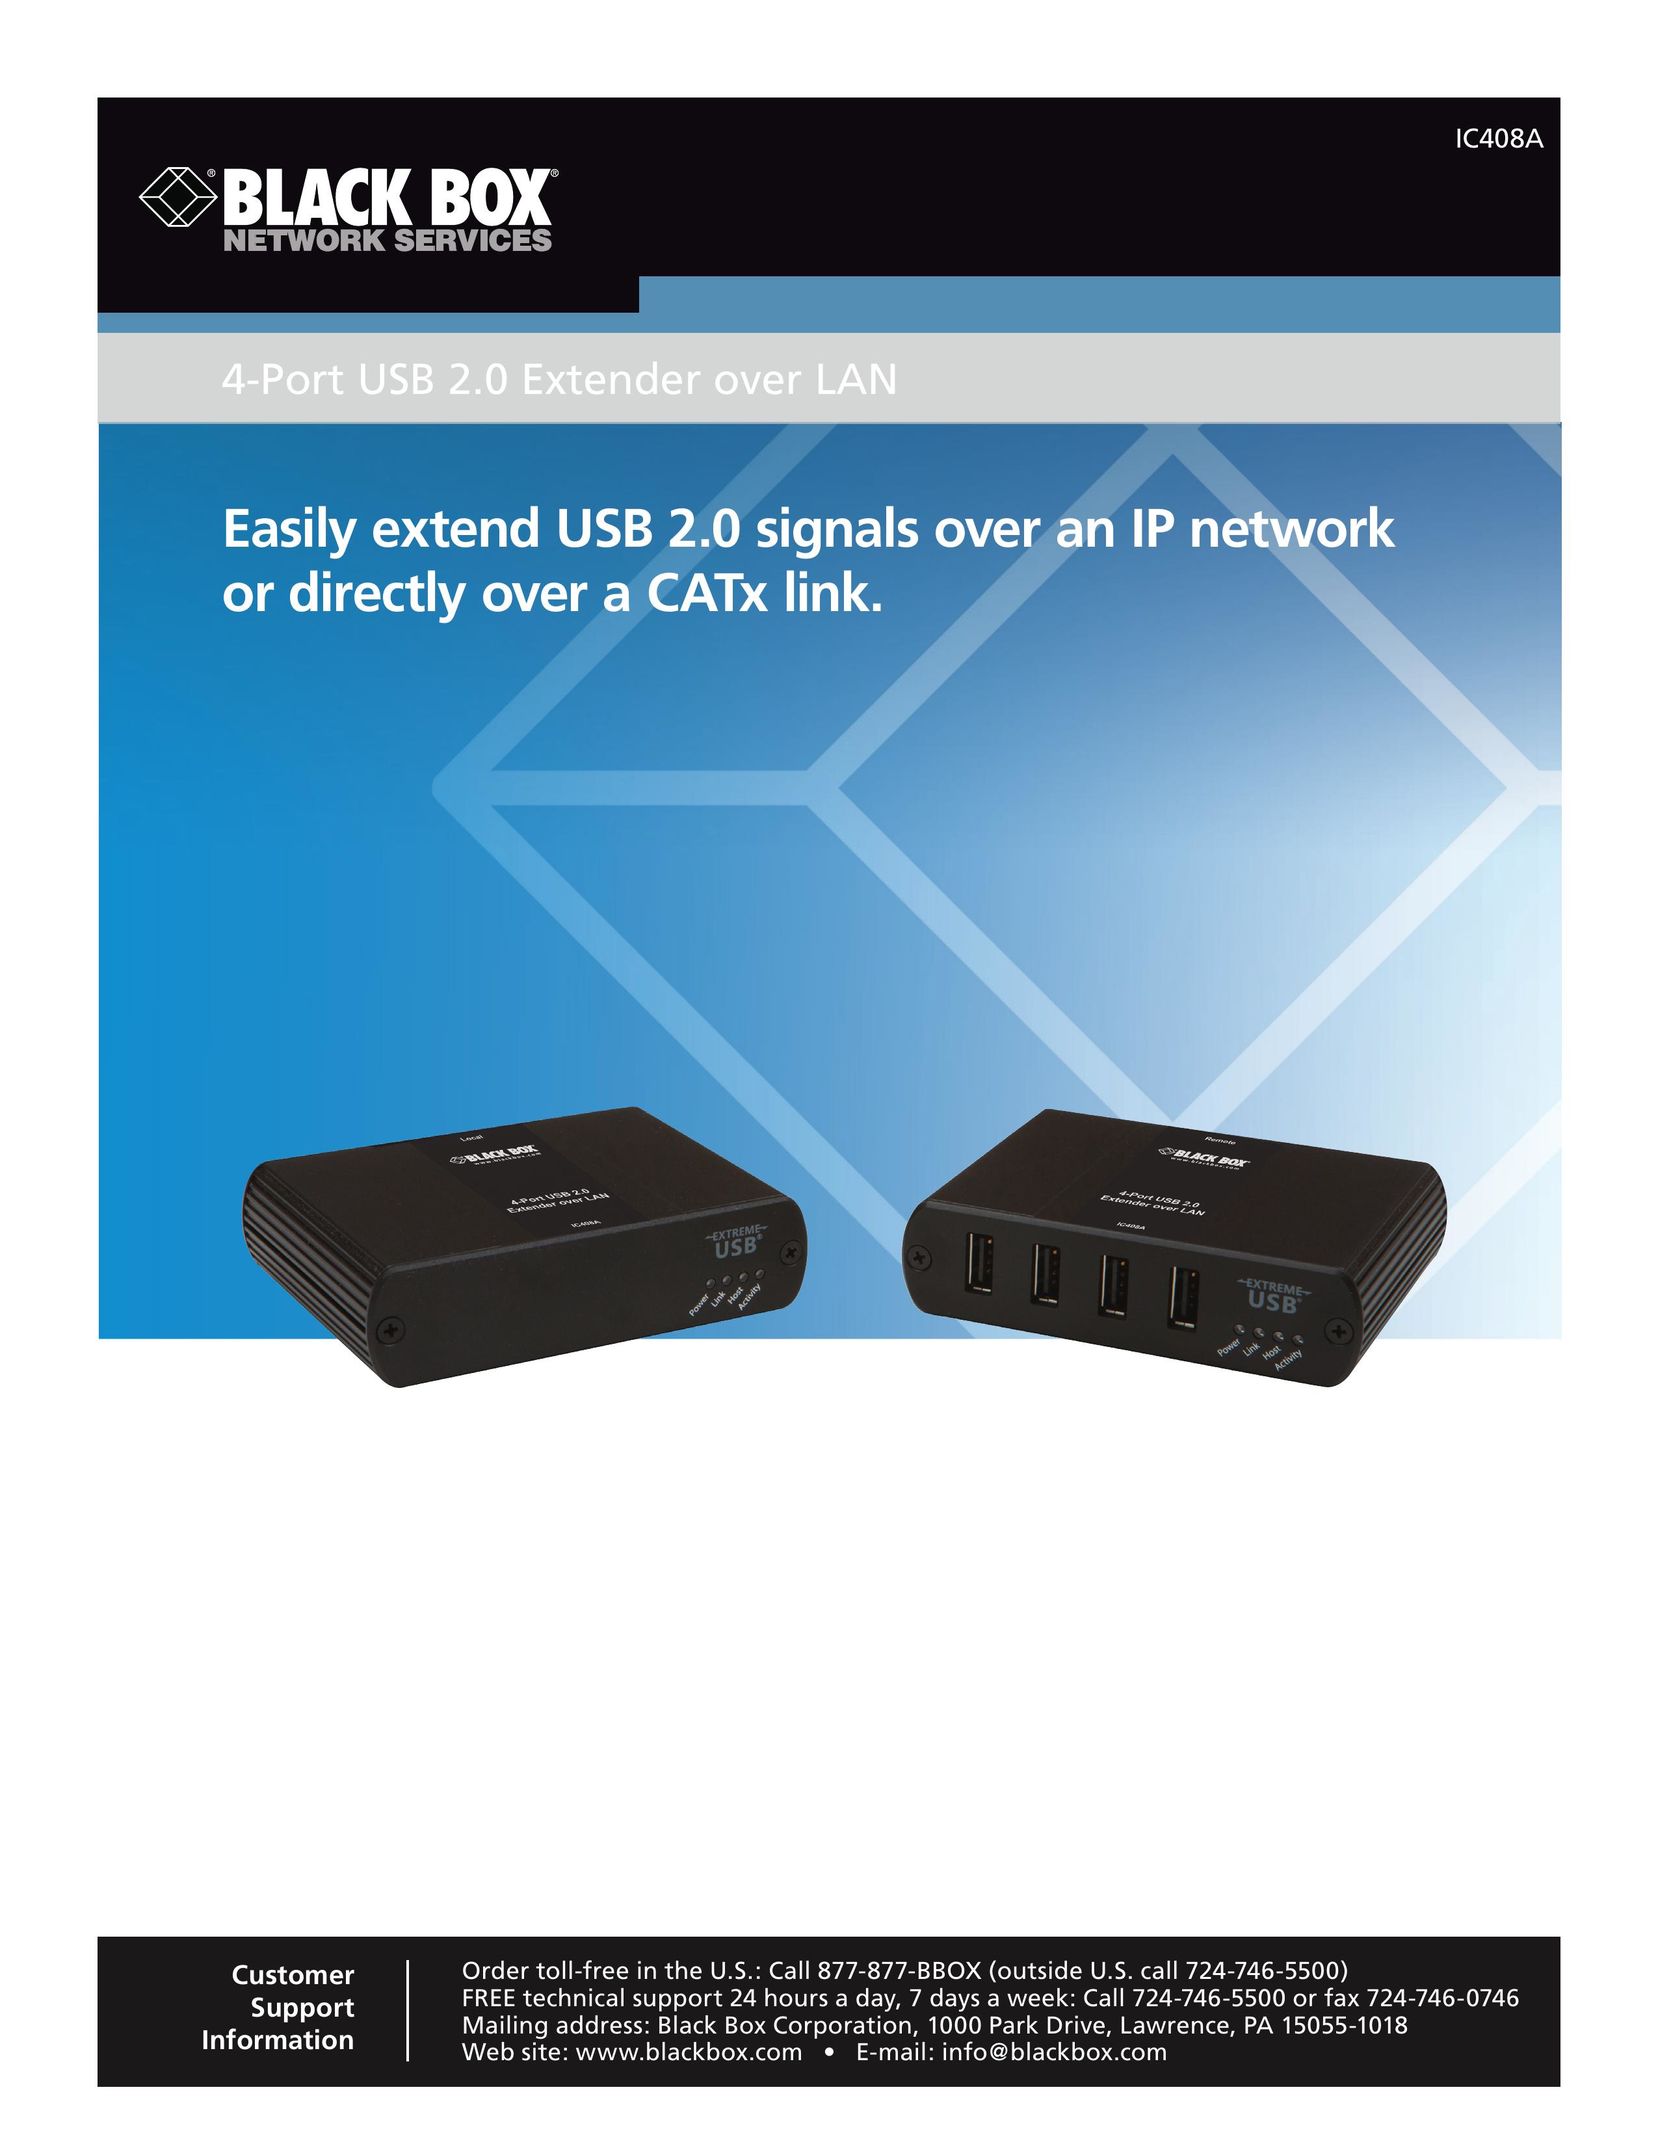 Black Box 4-Port USB 2.0 Extender over LAN Router User Manual